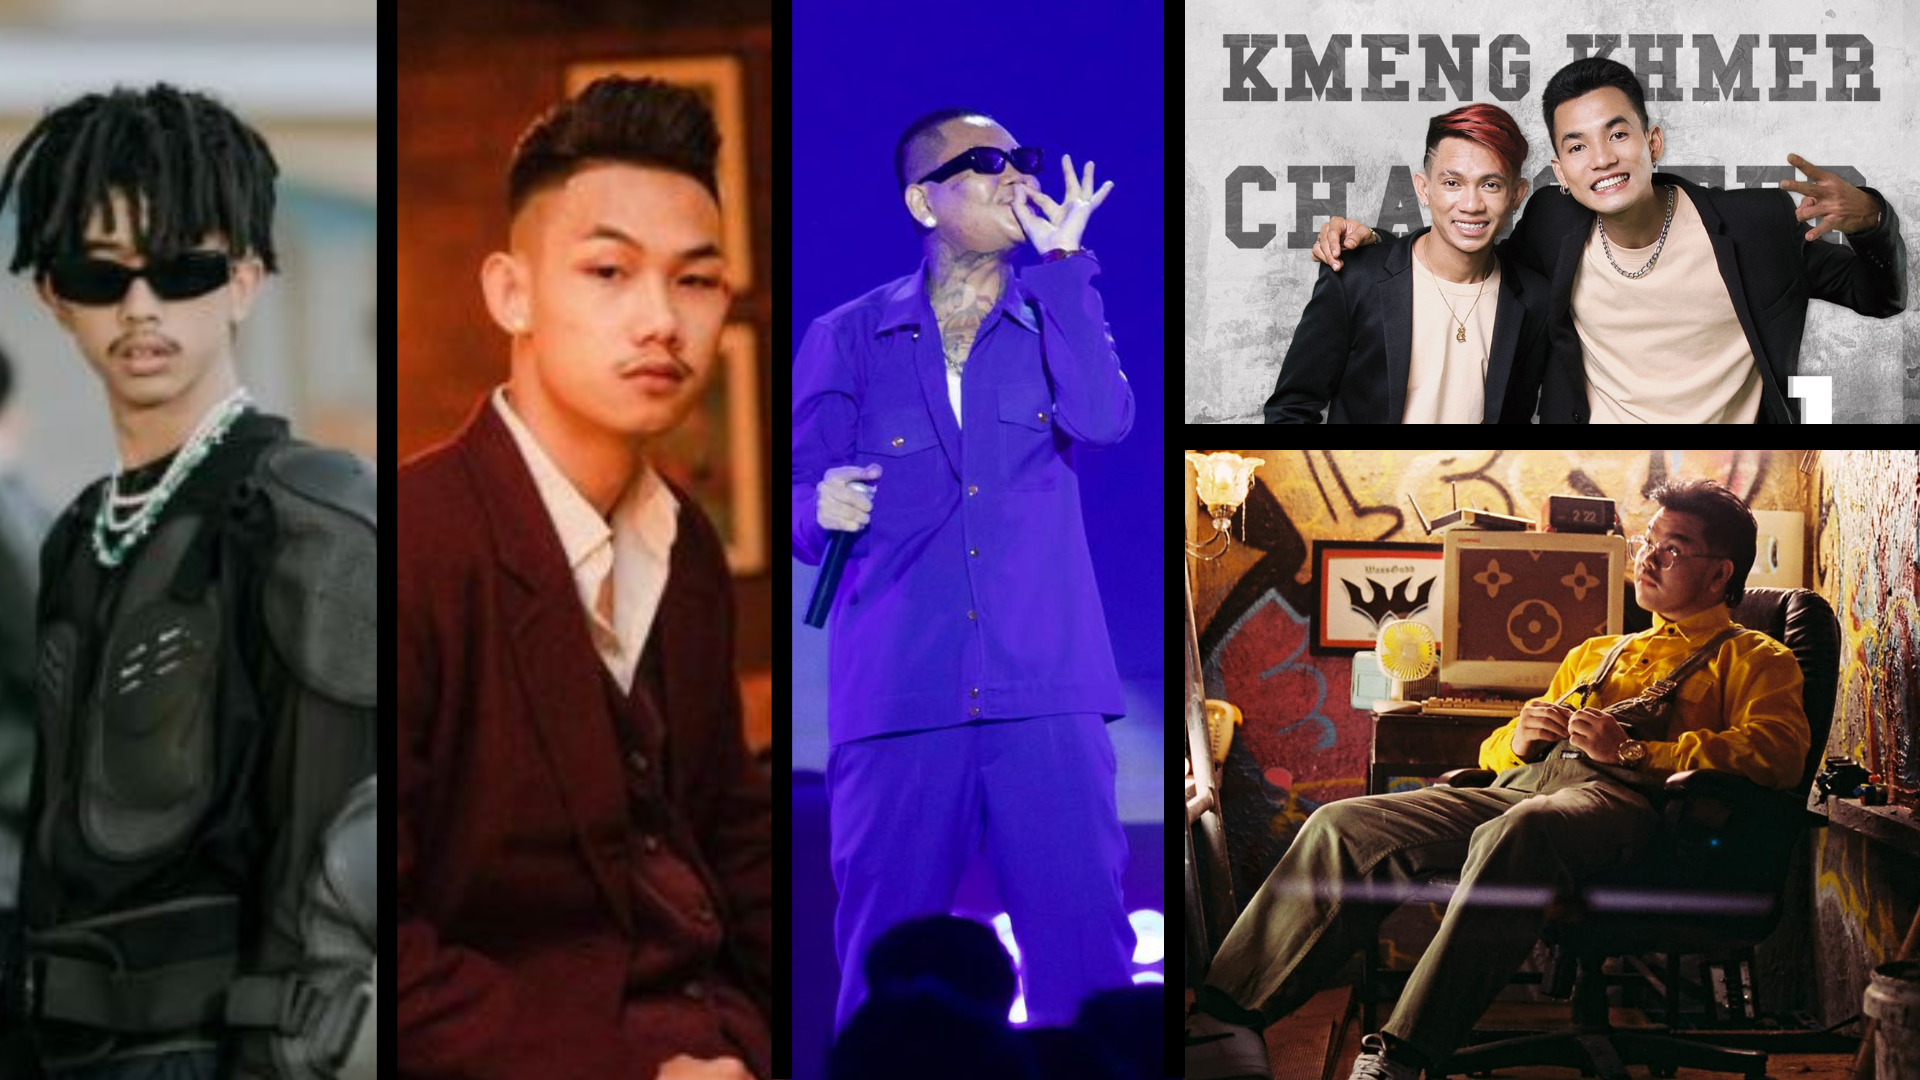 ខែថ្មី! ចំរៀងថ្មីពី YCN Tomie (Awesome), Heng (កញ្ញាLV), MC Sey, Meezy24k (5G), Khmeng Khmer (គោលដៅ)